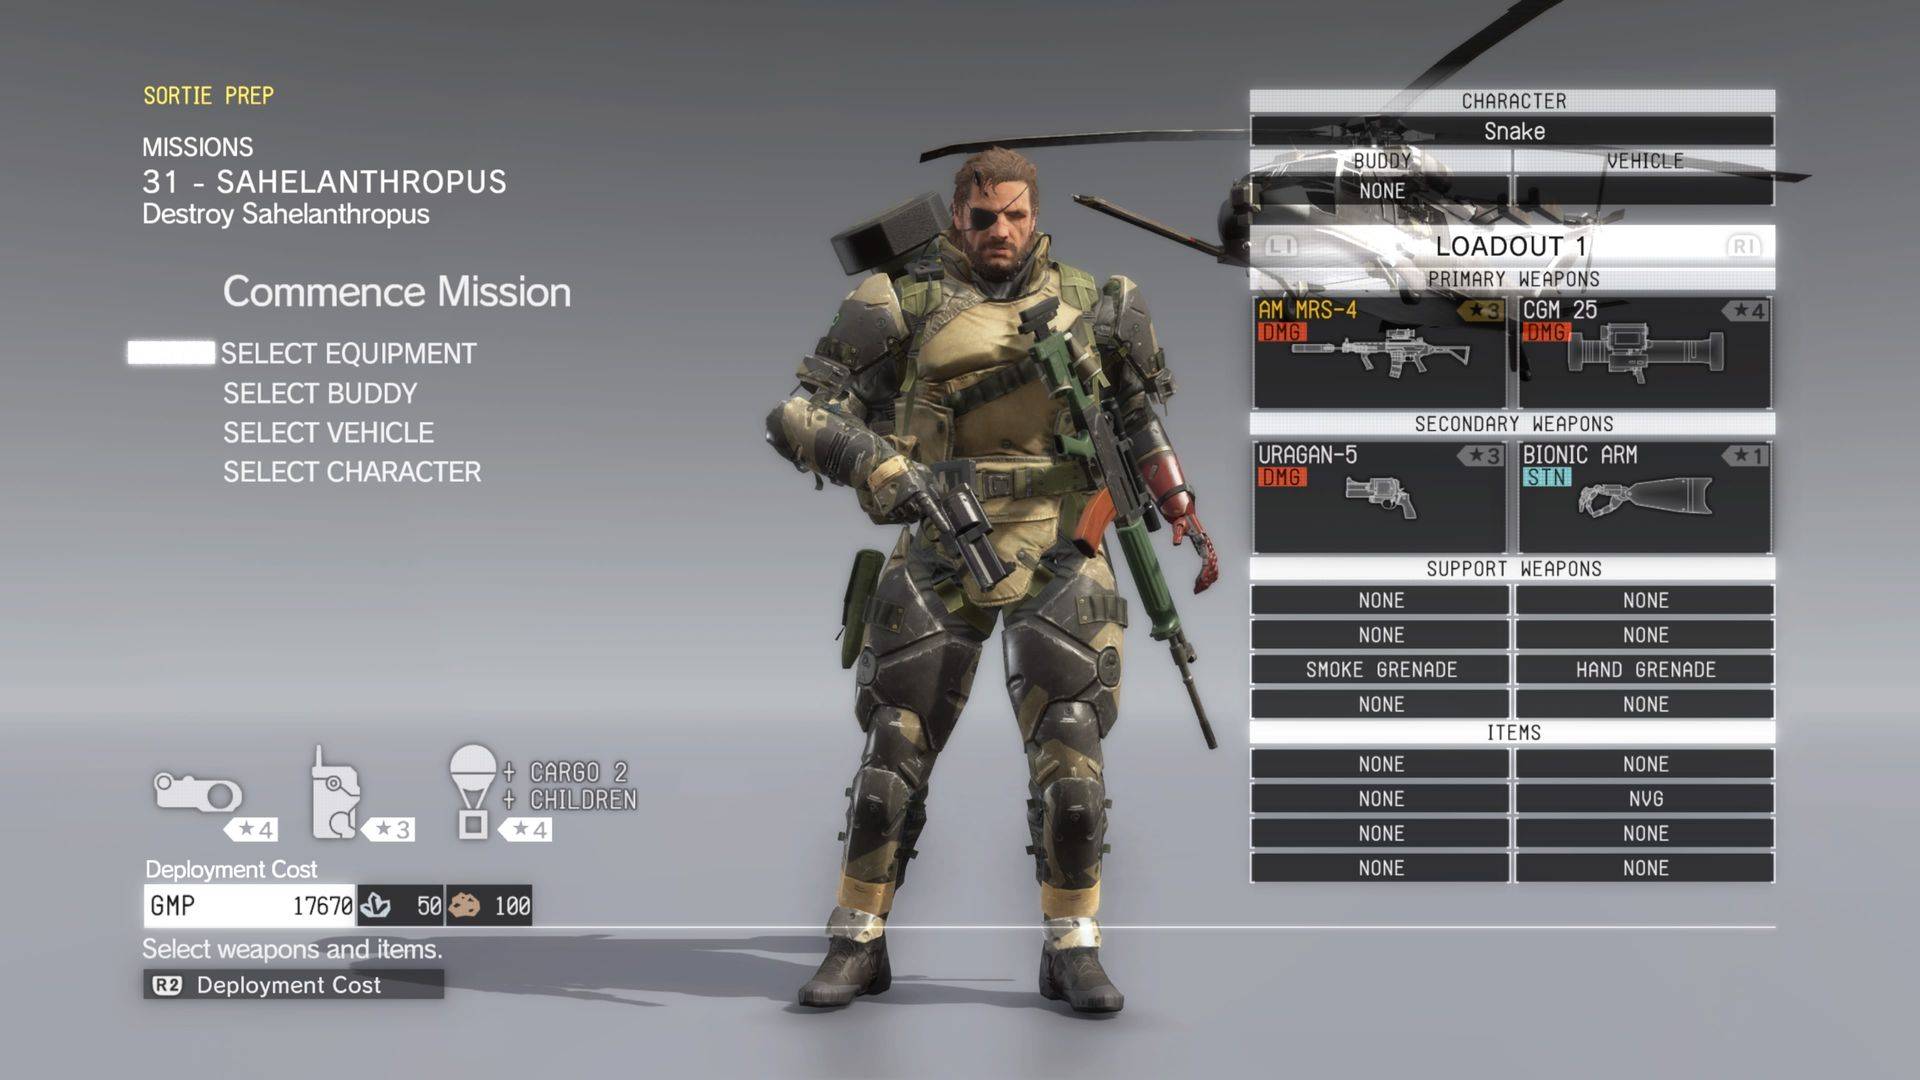 Metal Gear Solid 5 Sahelanthropus missione